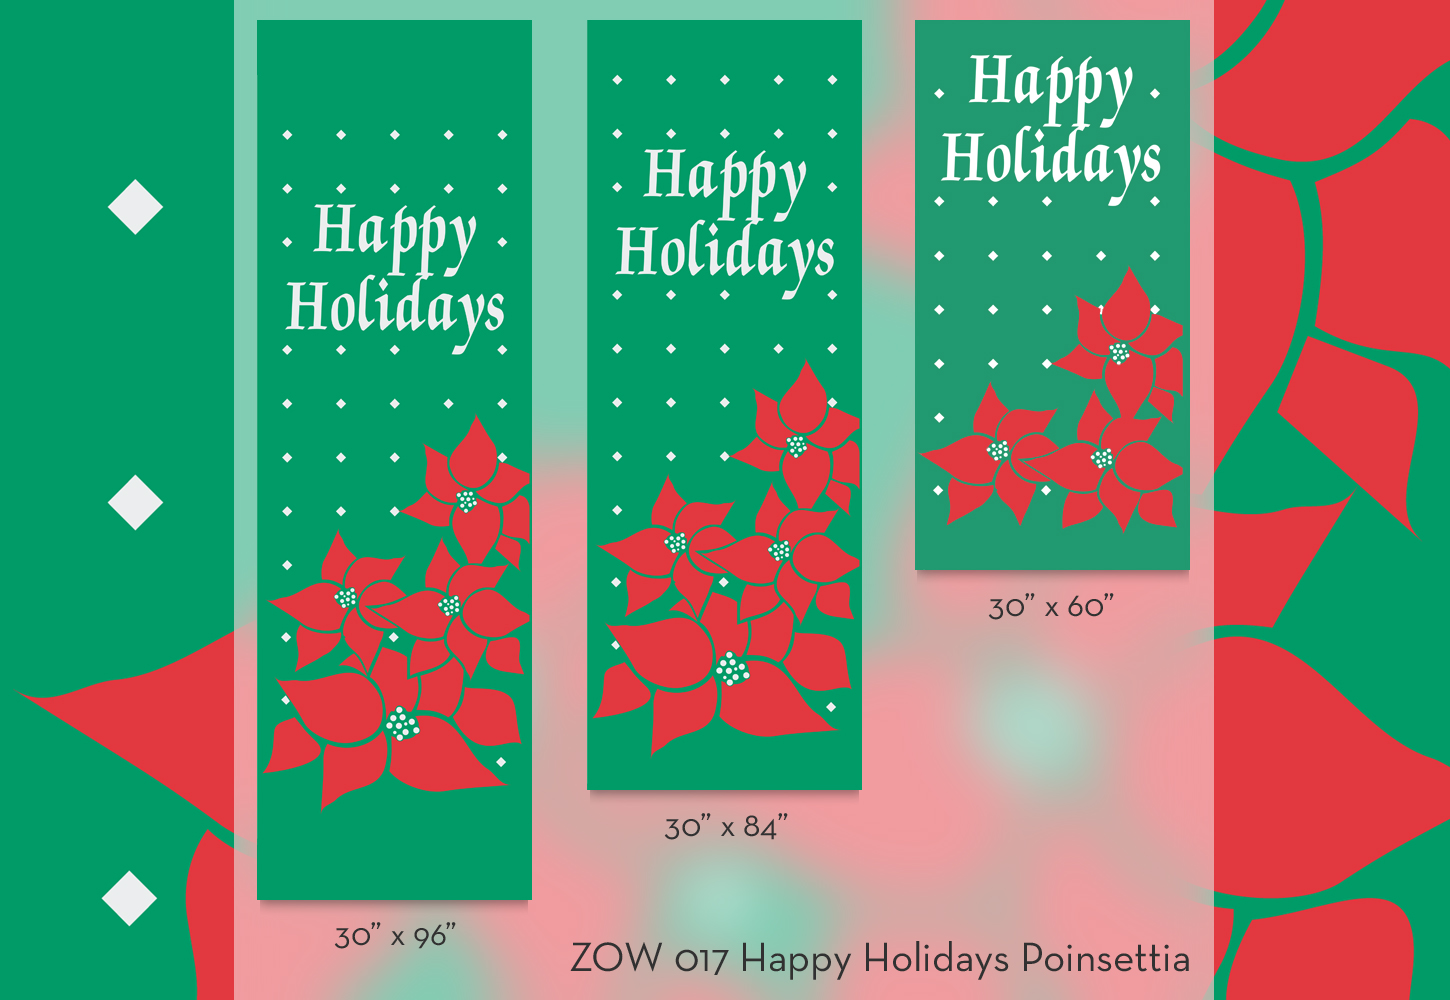 ZOW 017 Happy Holidays Poinsettia